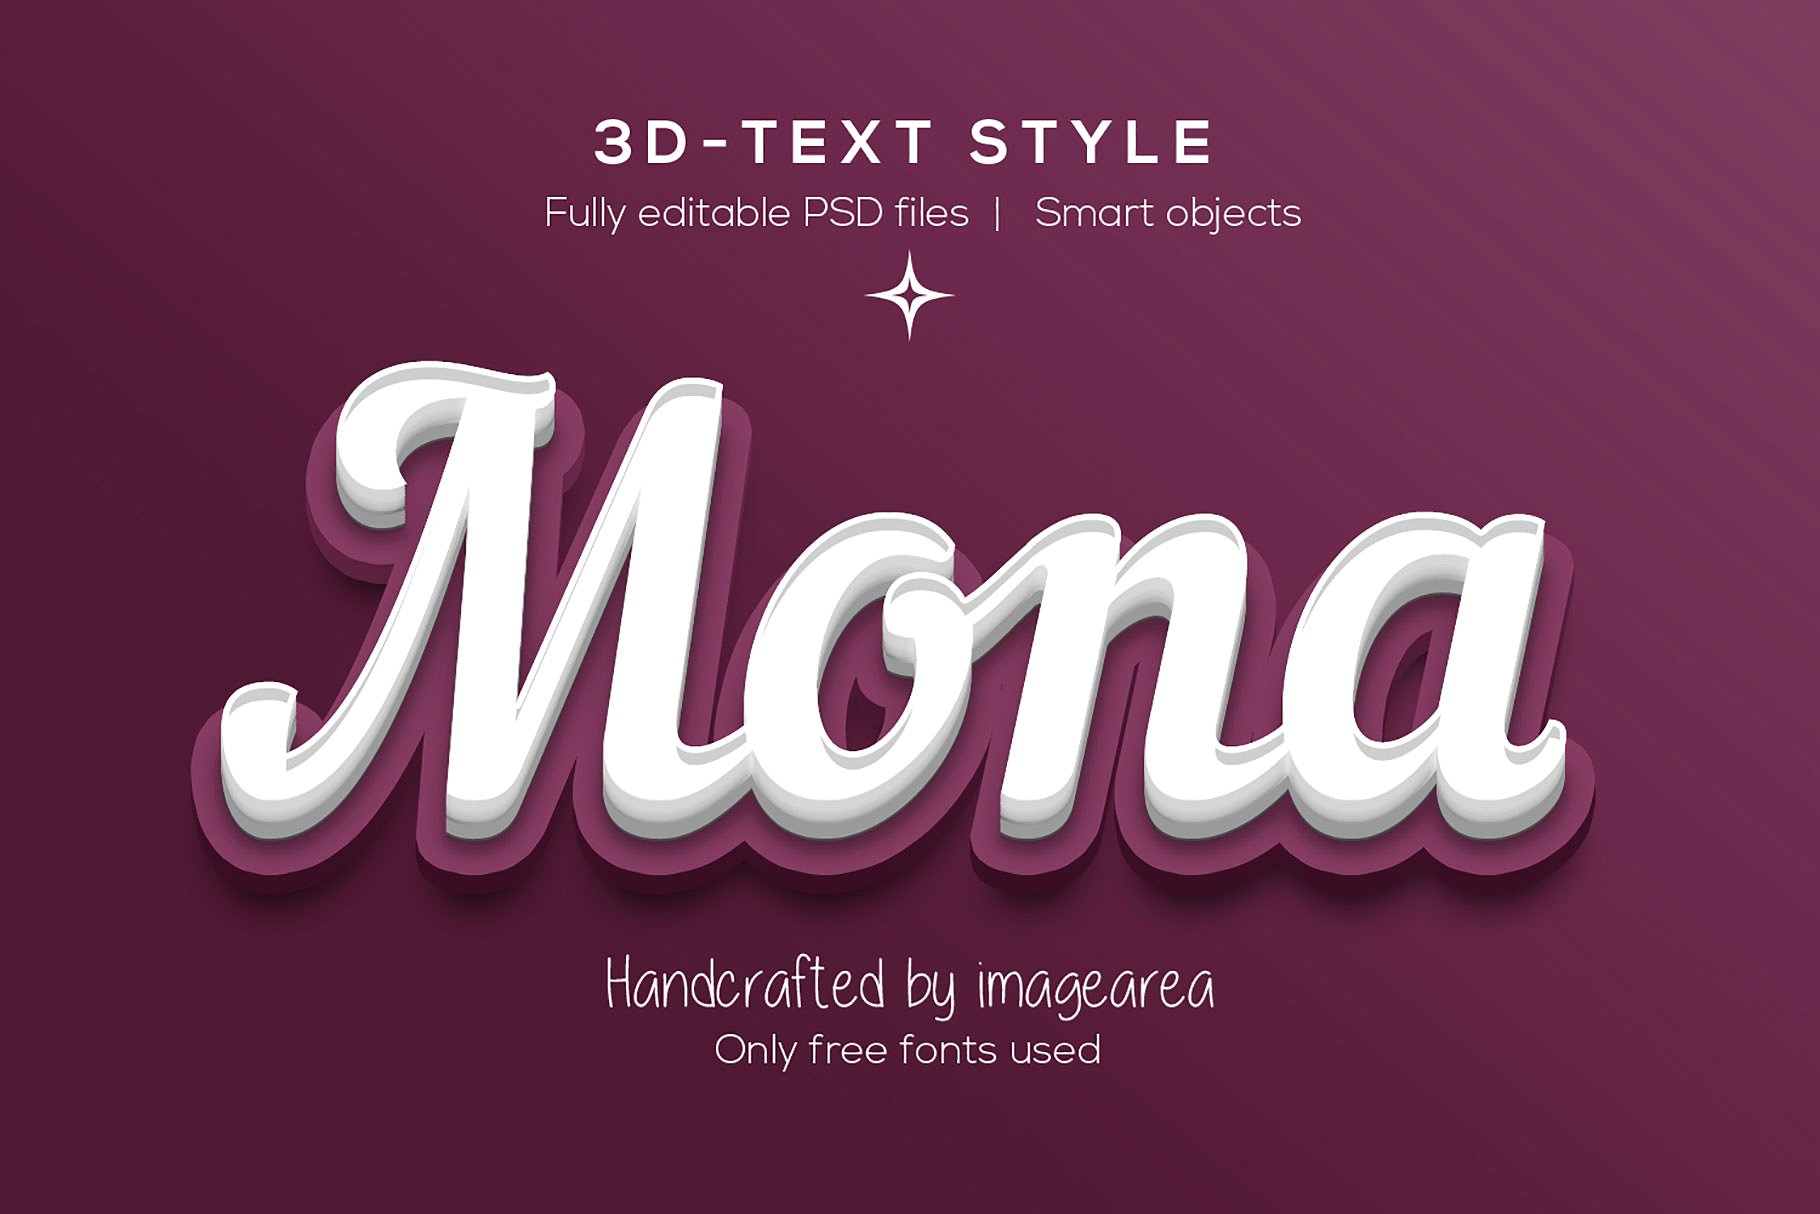 创意3D文本图层样式 Amazing 3D Text Styles插图(5)